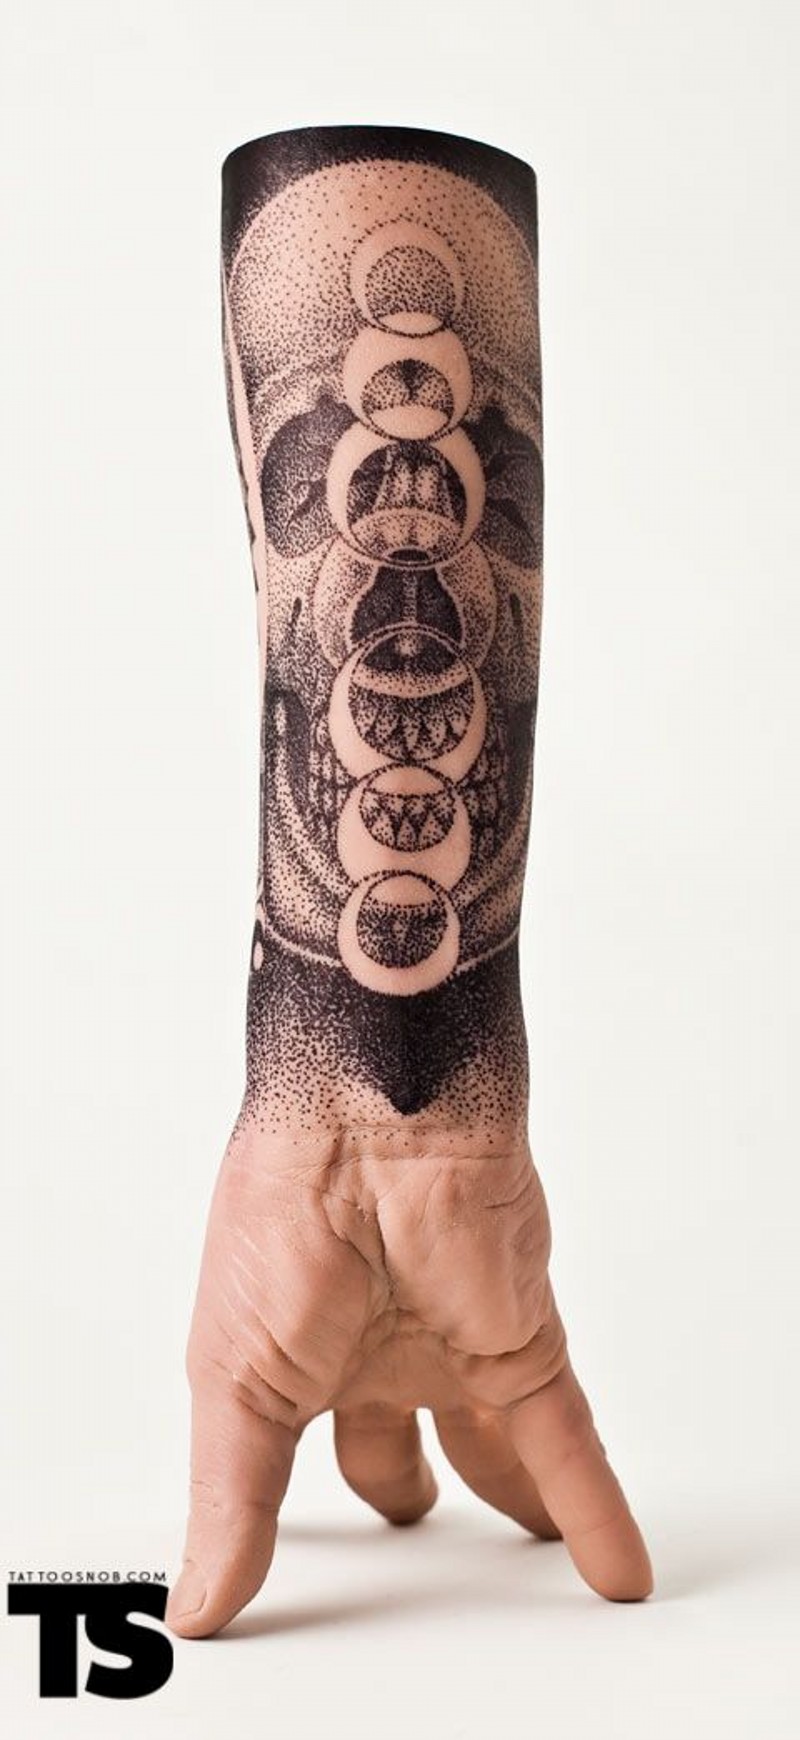 手臂黑色点刺骷髅与月亮纹身图案